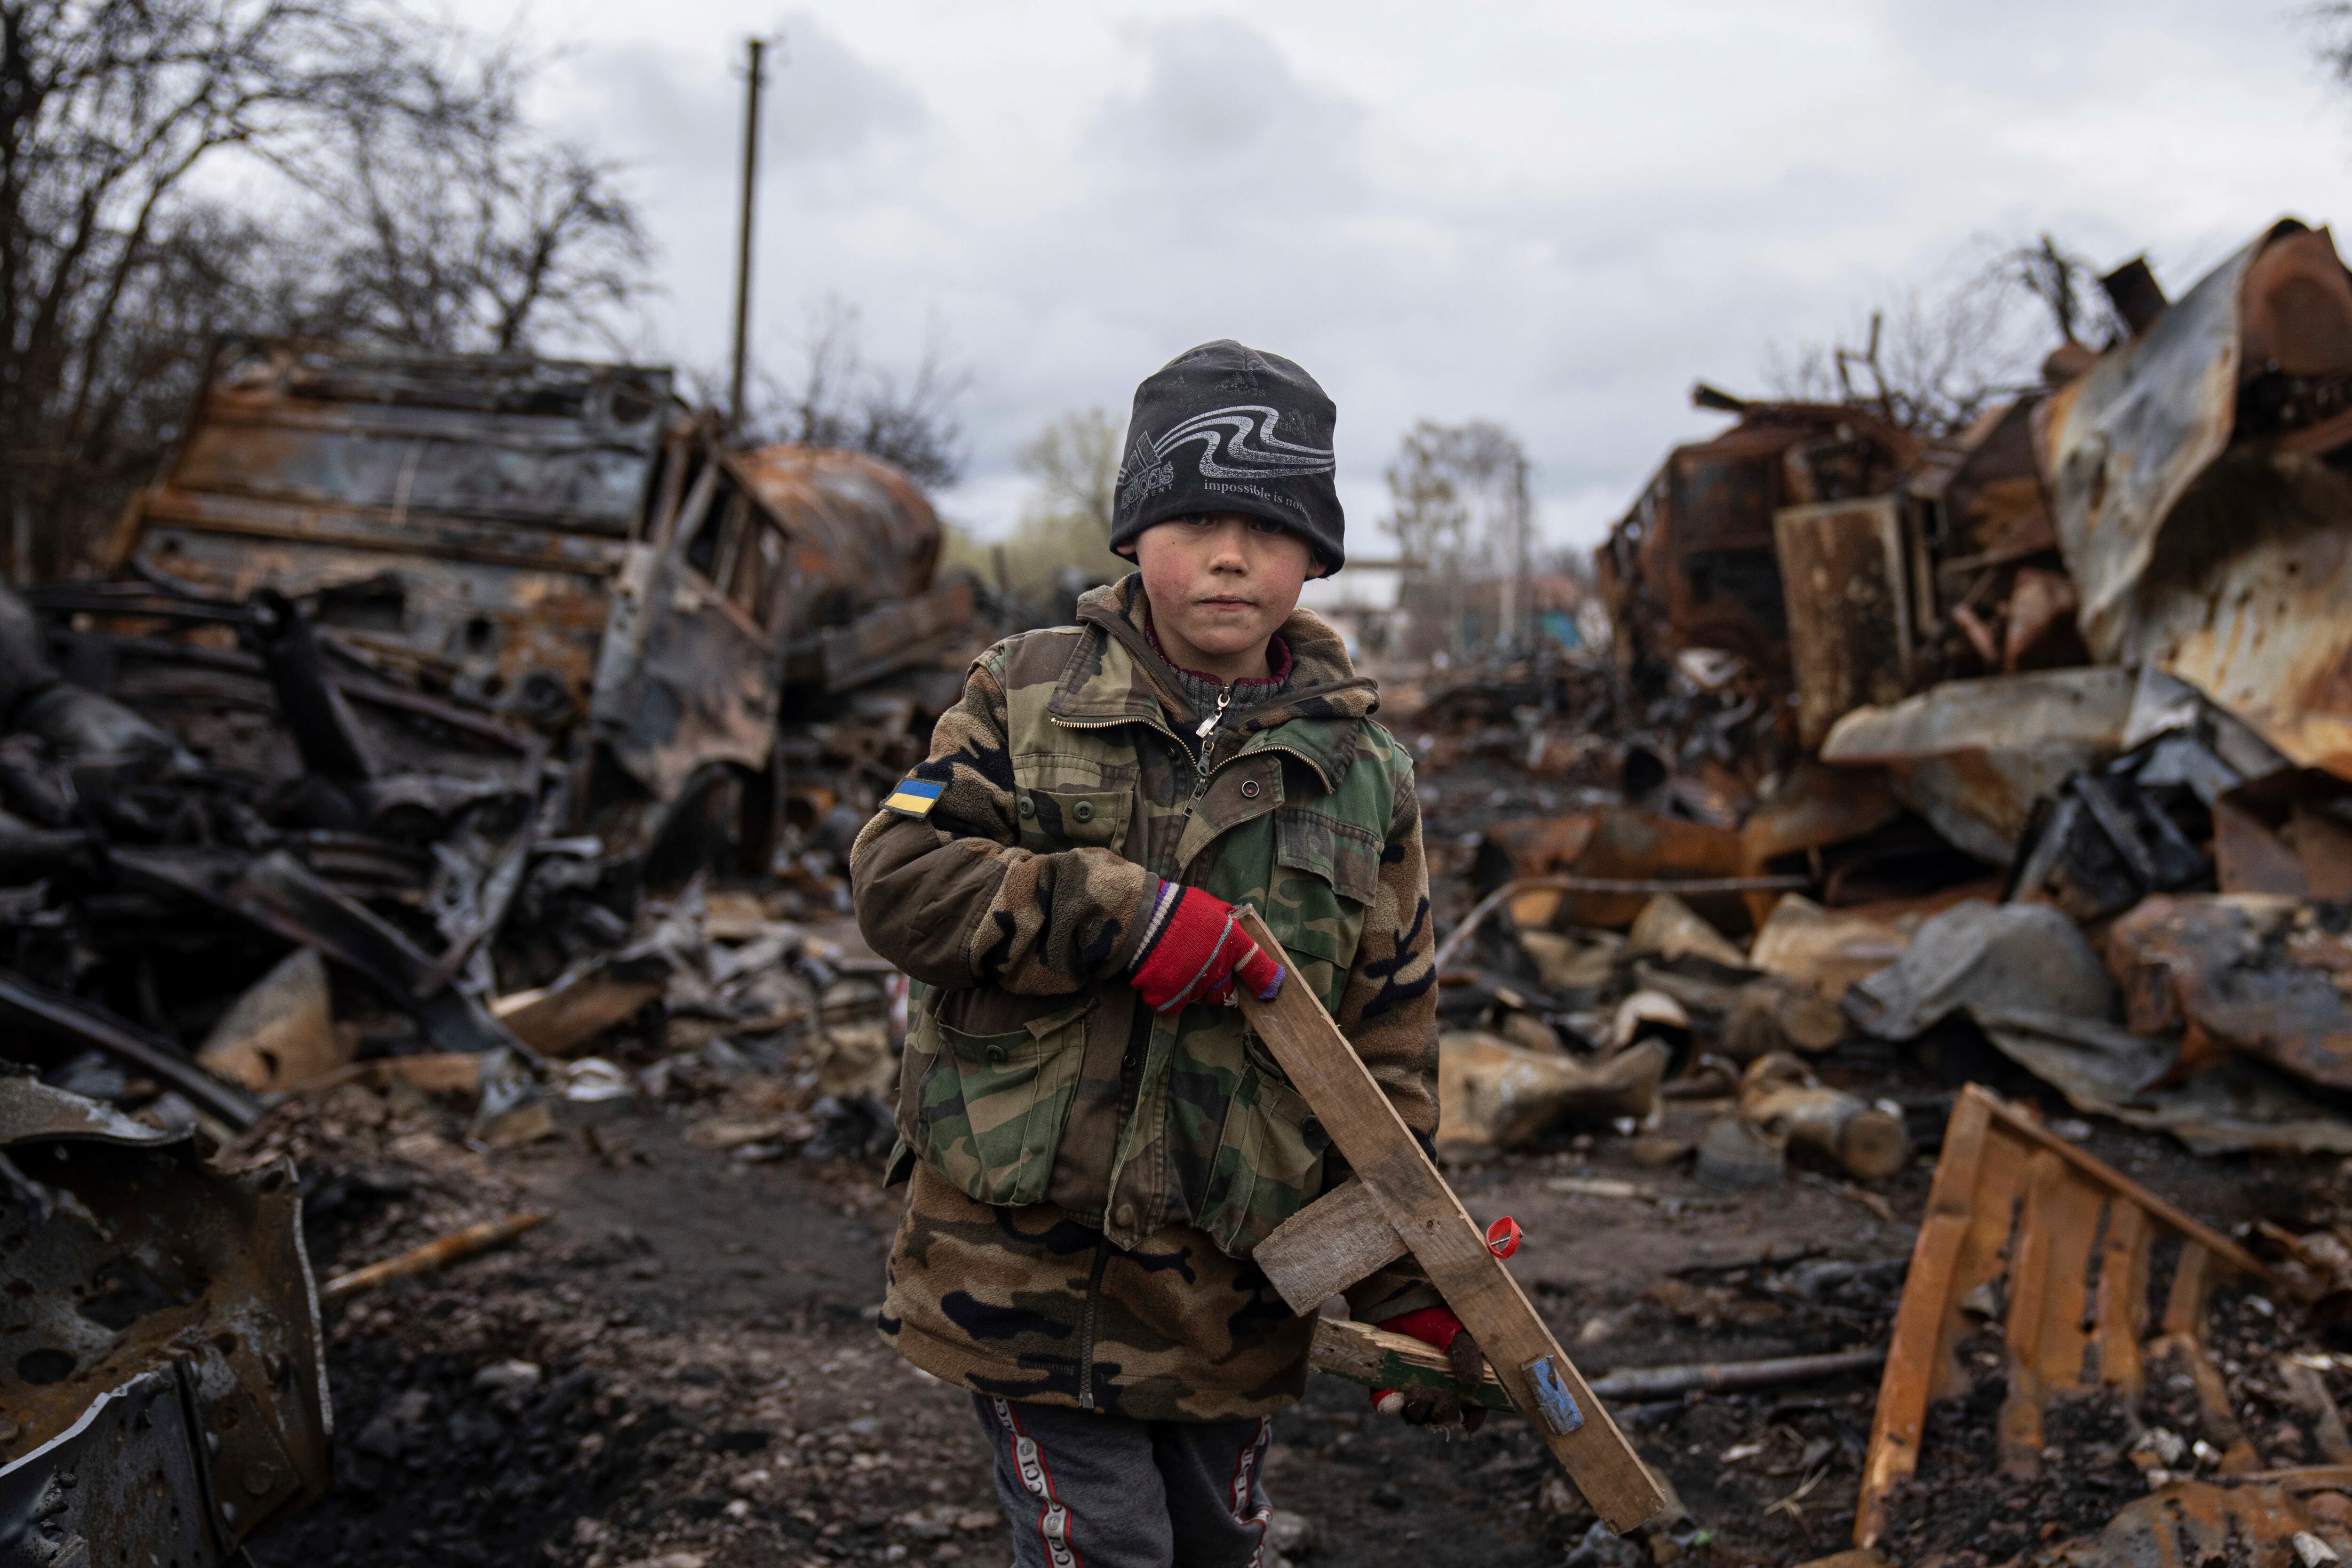 Yehor, de 7 años, sostiene un rifle de juguete de madera junto a vehículos militares rusos destruidos cerca de Chernihiv, Ucrania, el domingo 17 de abril de 2022.